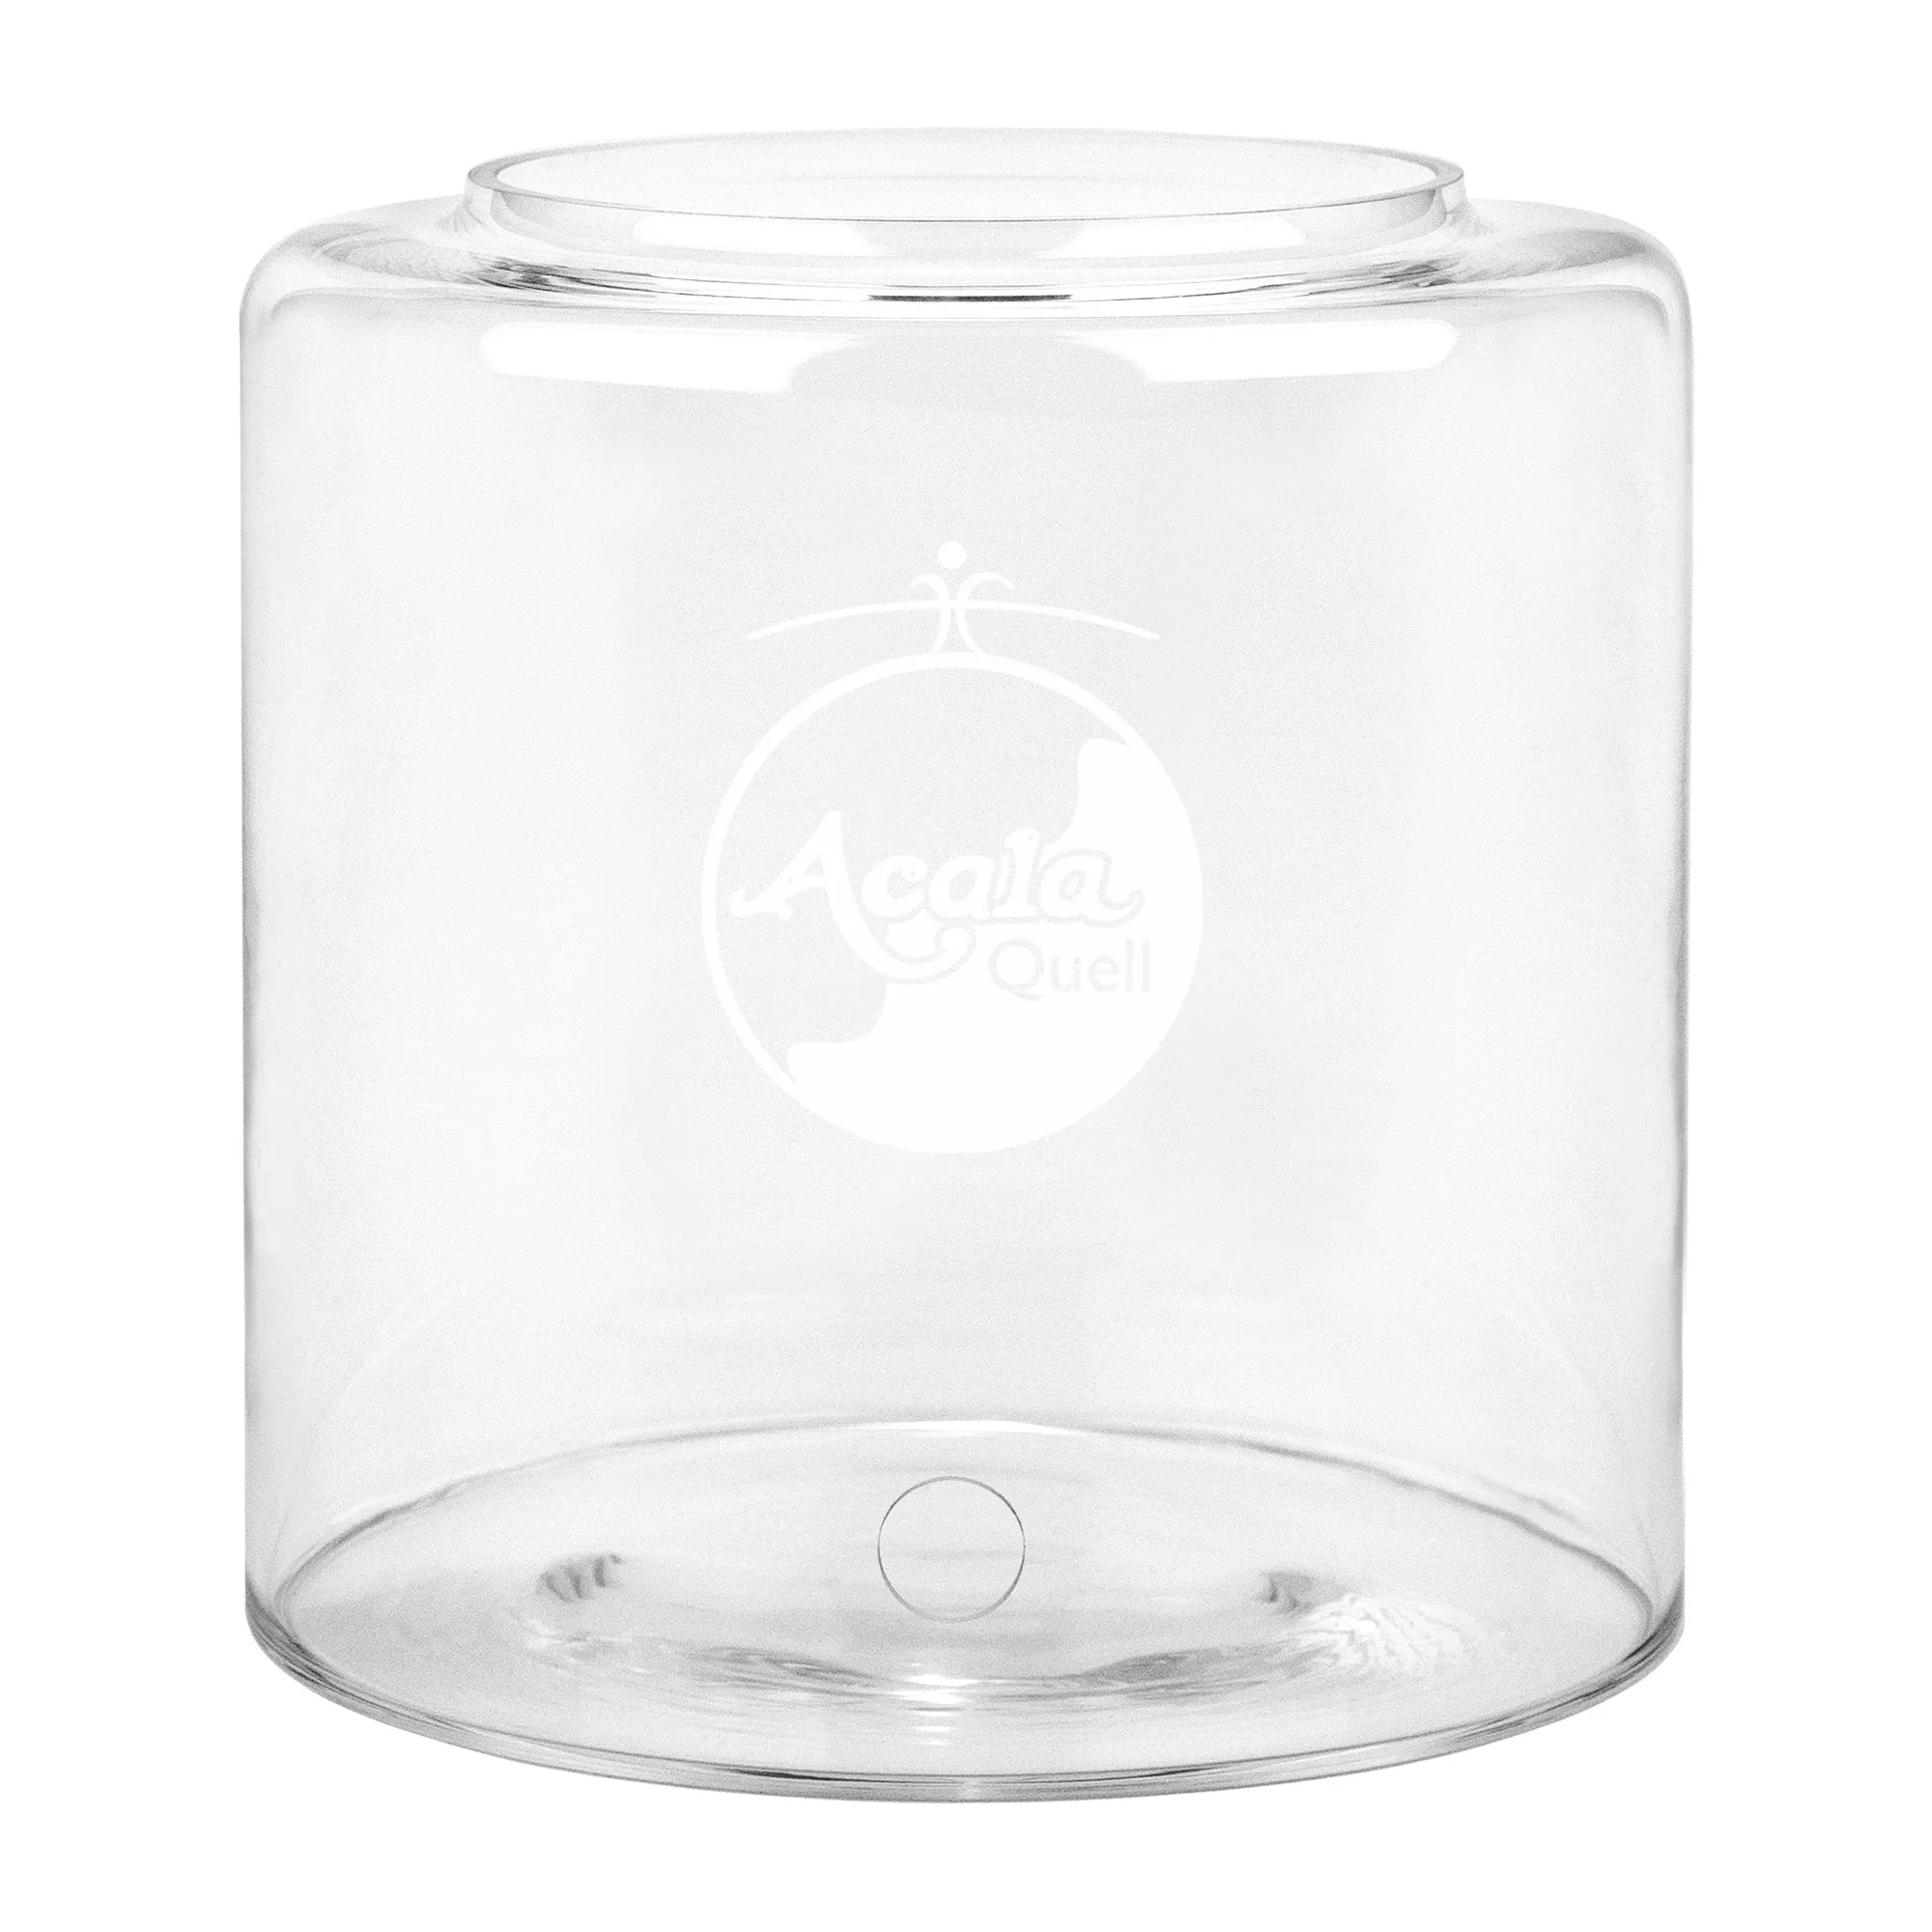 Zu sehen ist ein 5L Glastank für den Acala Stand Wasserfilter Mini in kristallklar vor weißem Hintergrund. Er hat ein Bohrloch für den Wasserhahn und darüber sieht man das AcalaQuell Logo in weiß, welches auf den Tank graviert ist.